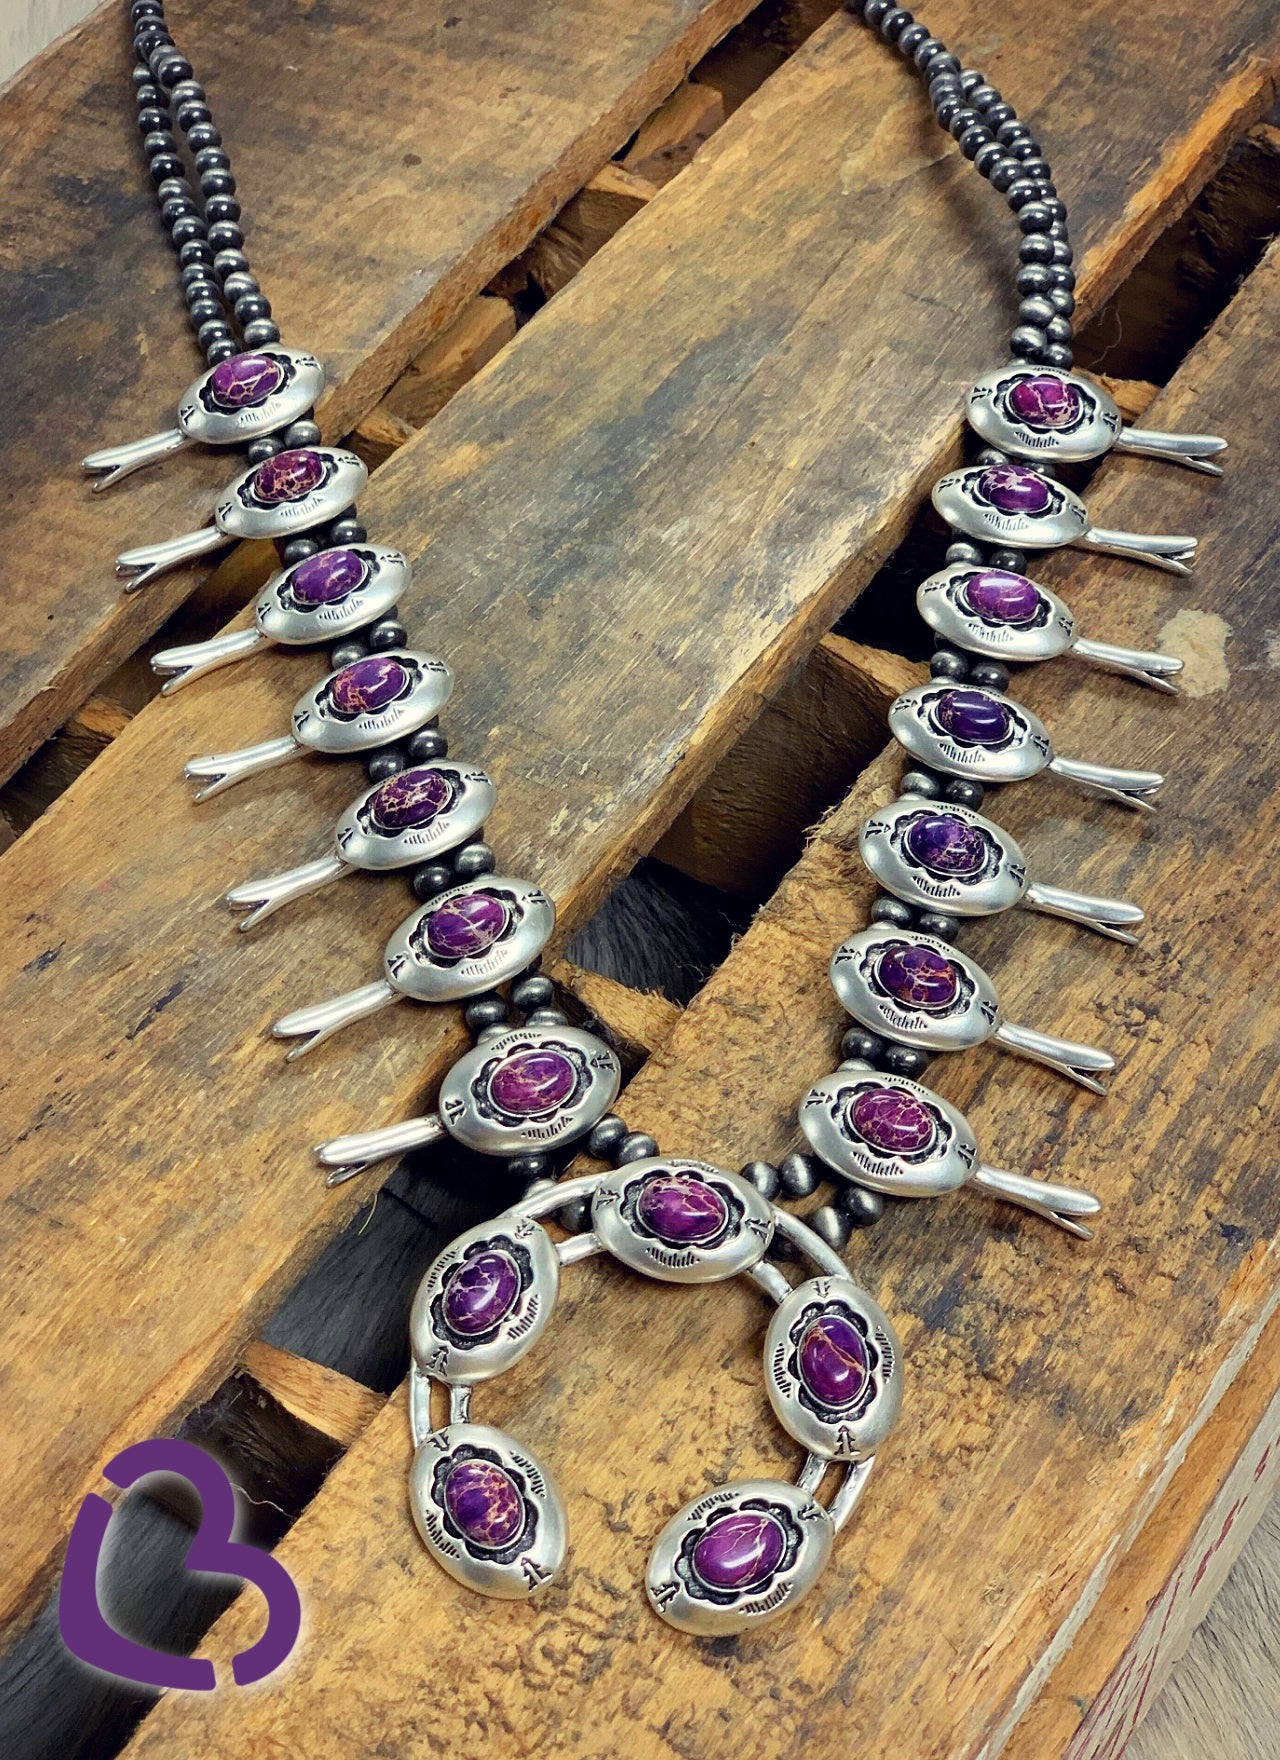 The Victoria Squash Blossom Necklace in Purple Jewelry 18 